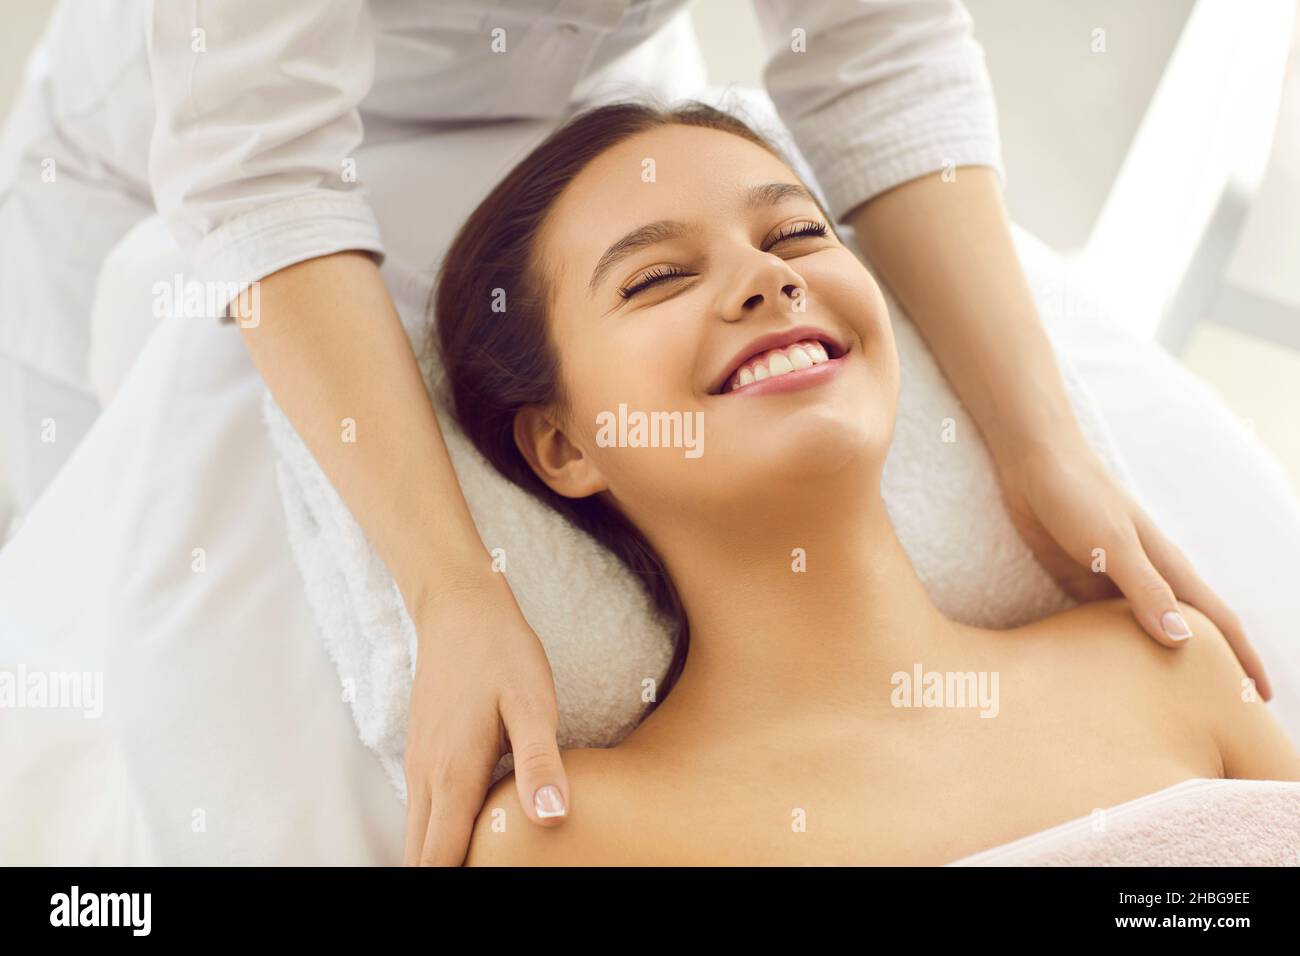 Une femme heureuse souriant tout en ayant un soin du visage cosmétique au salon de beauté ou au spa Banque D'Images